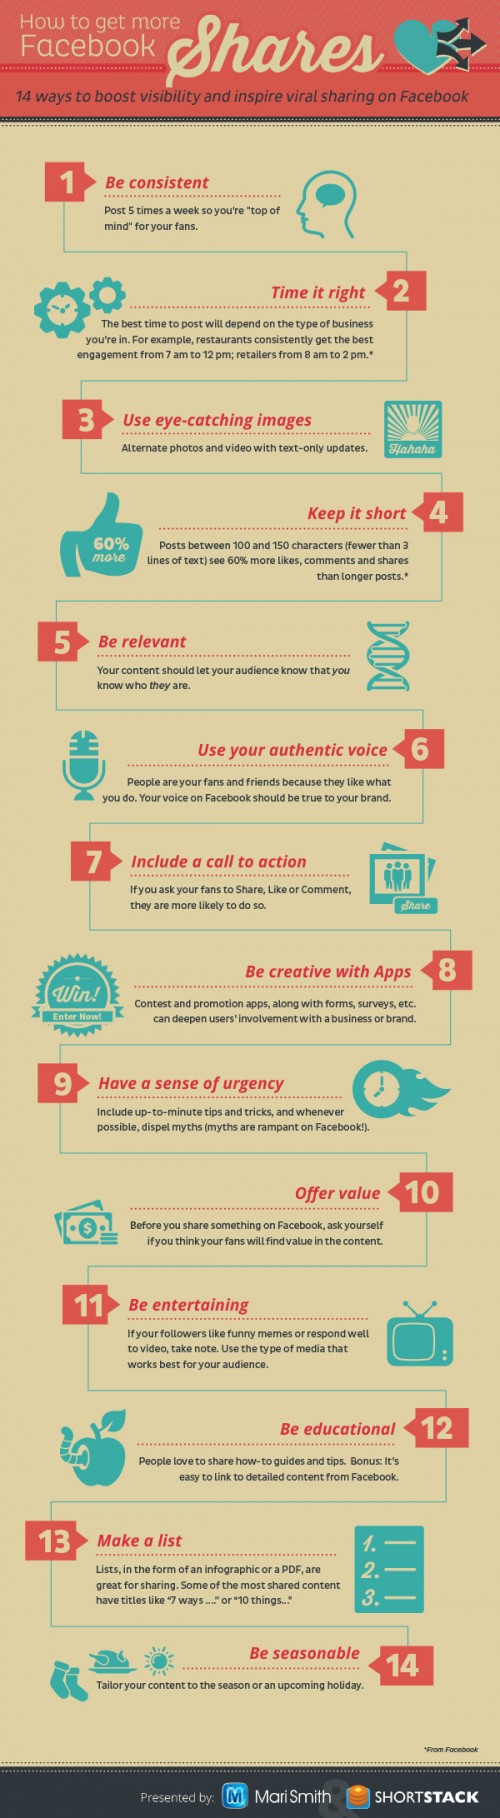 Отличная инфографика с дельными советами о том, как сделать свой контент в Facebook более распространяемым и актуальным.